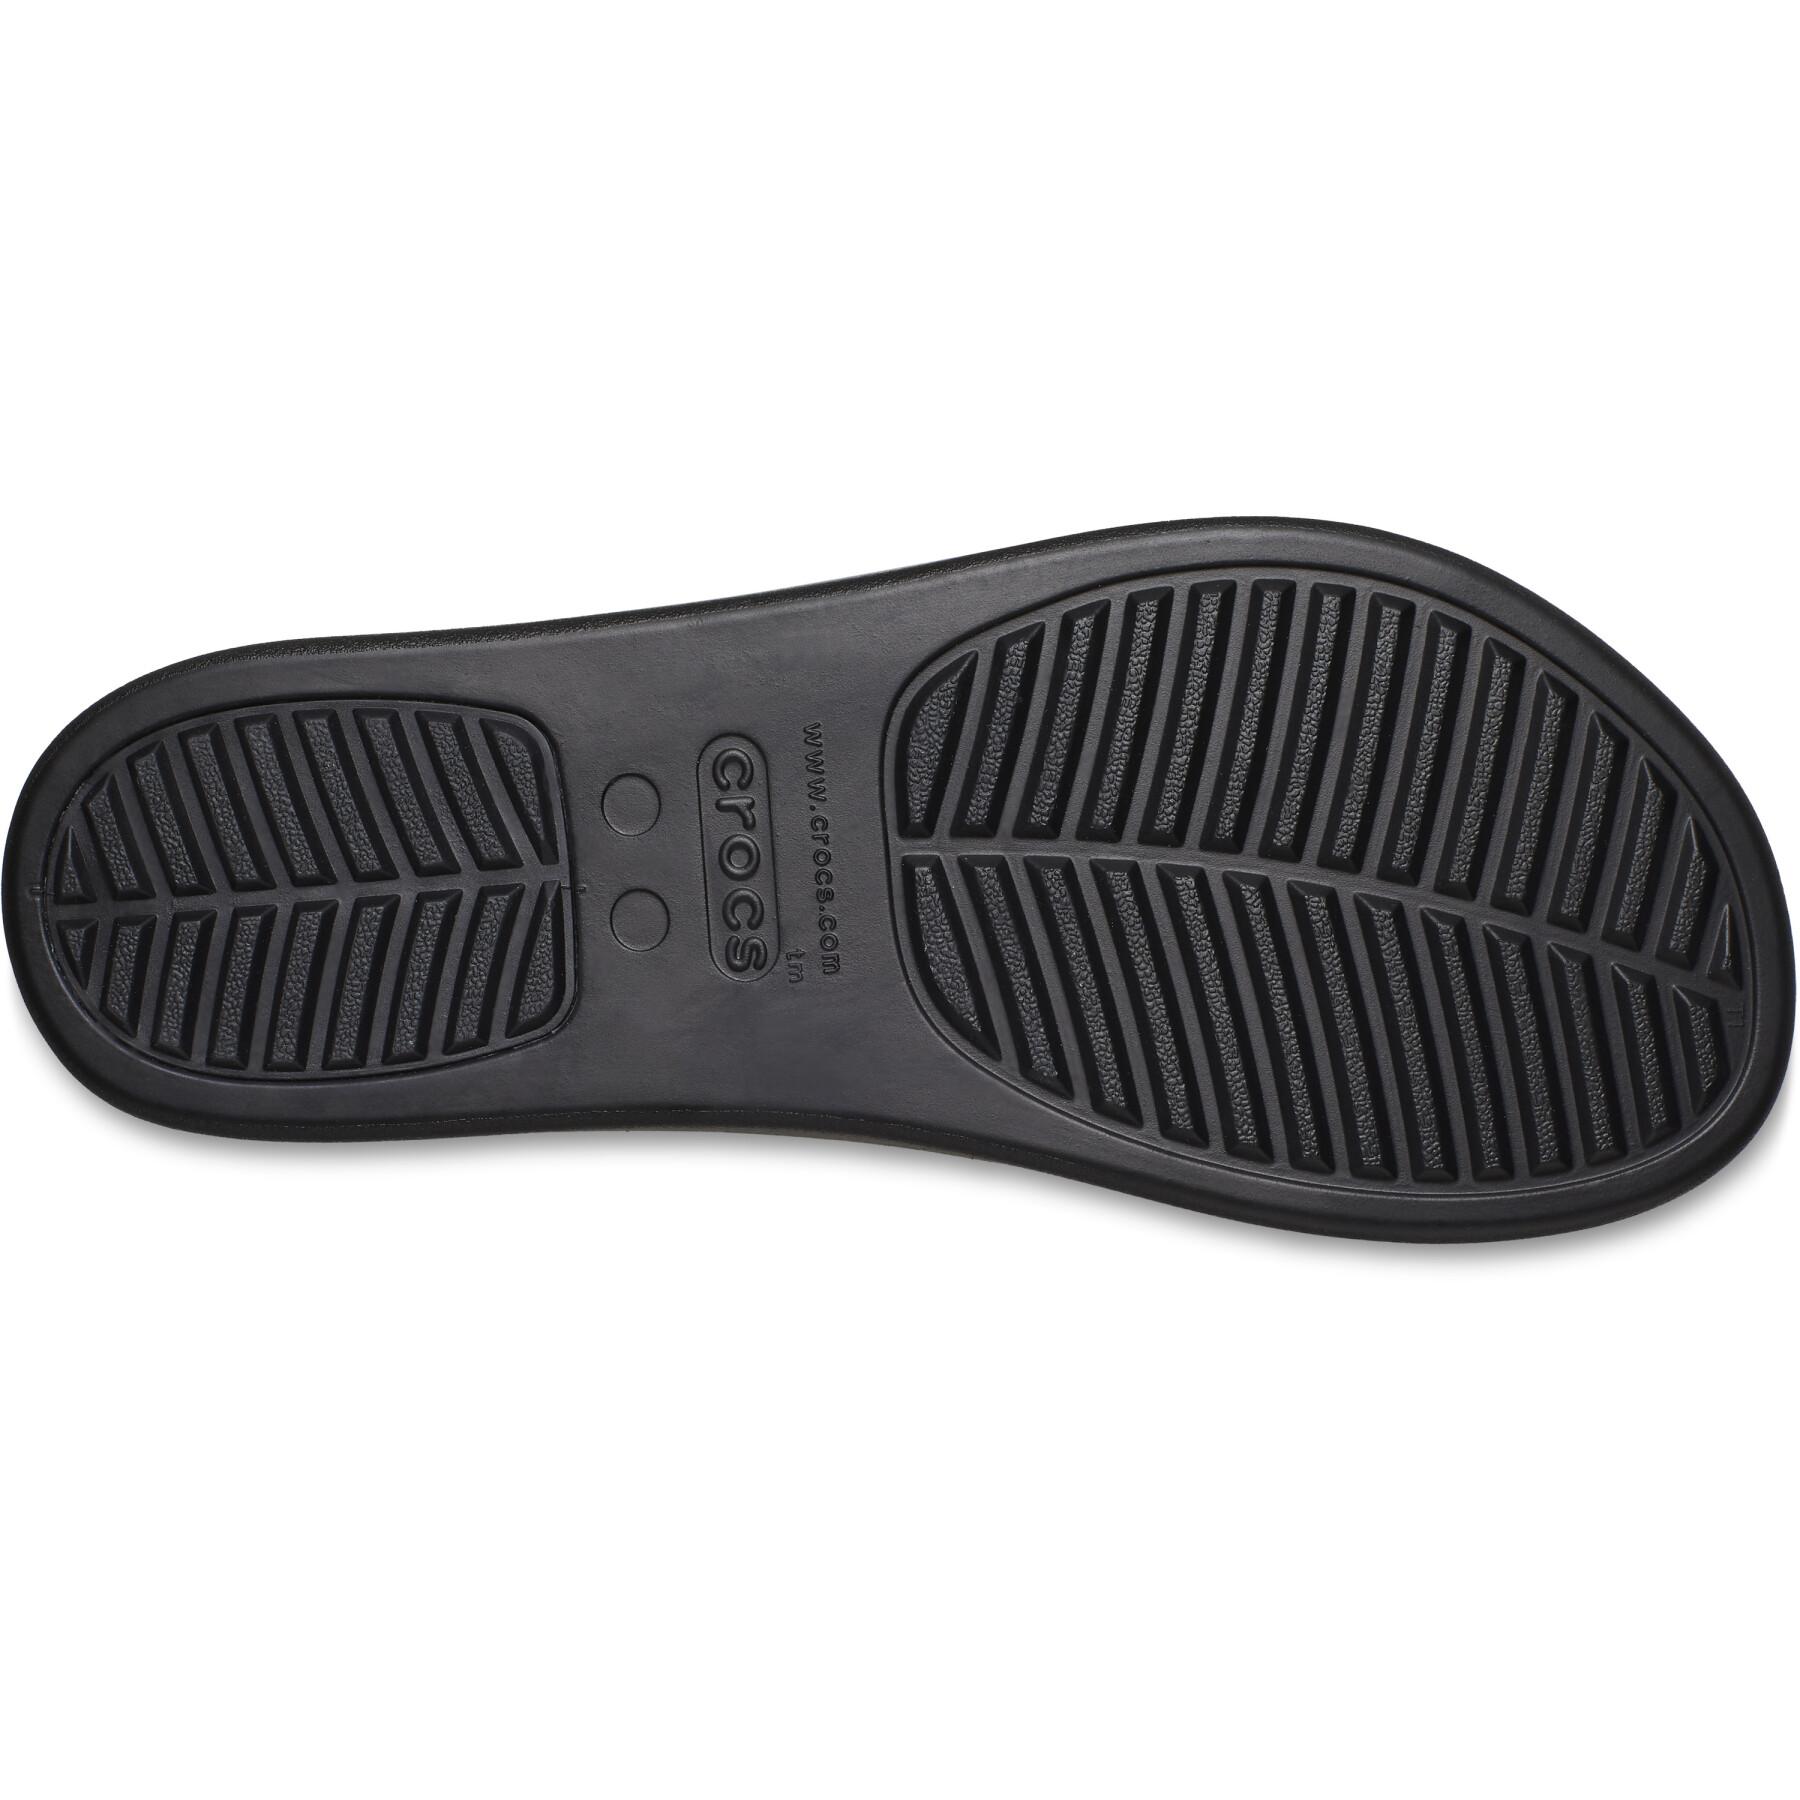 Women's flip-flops Crocs Brooklyn